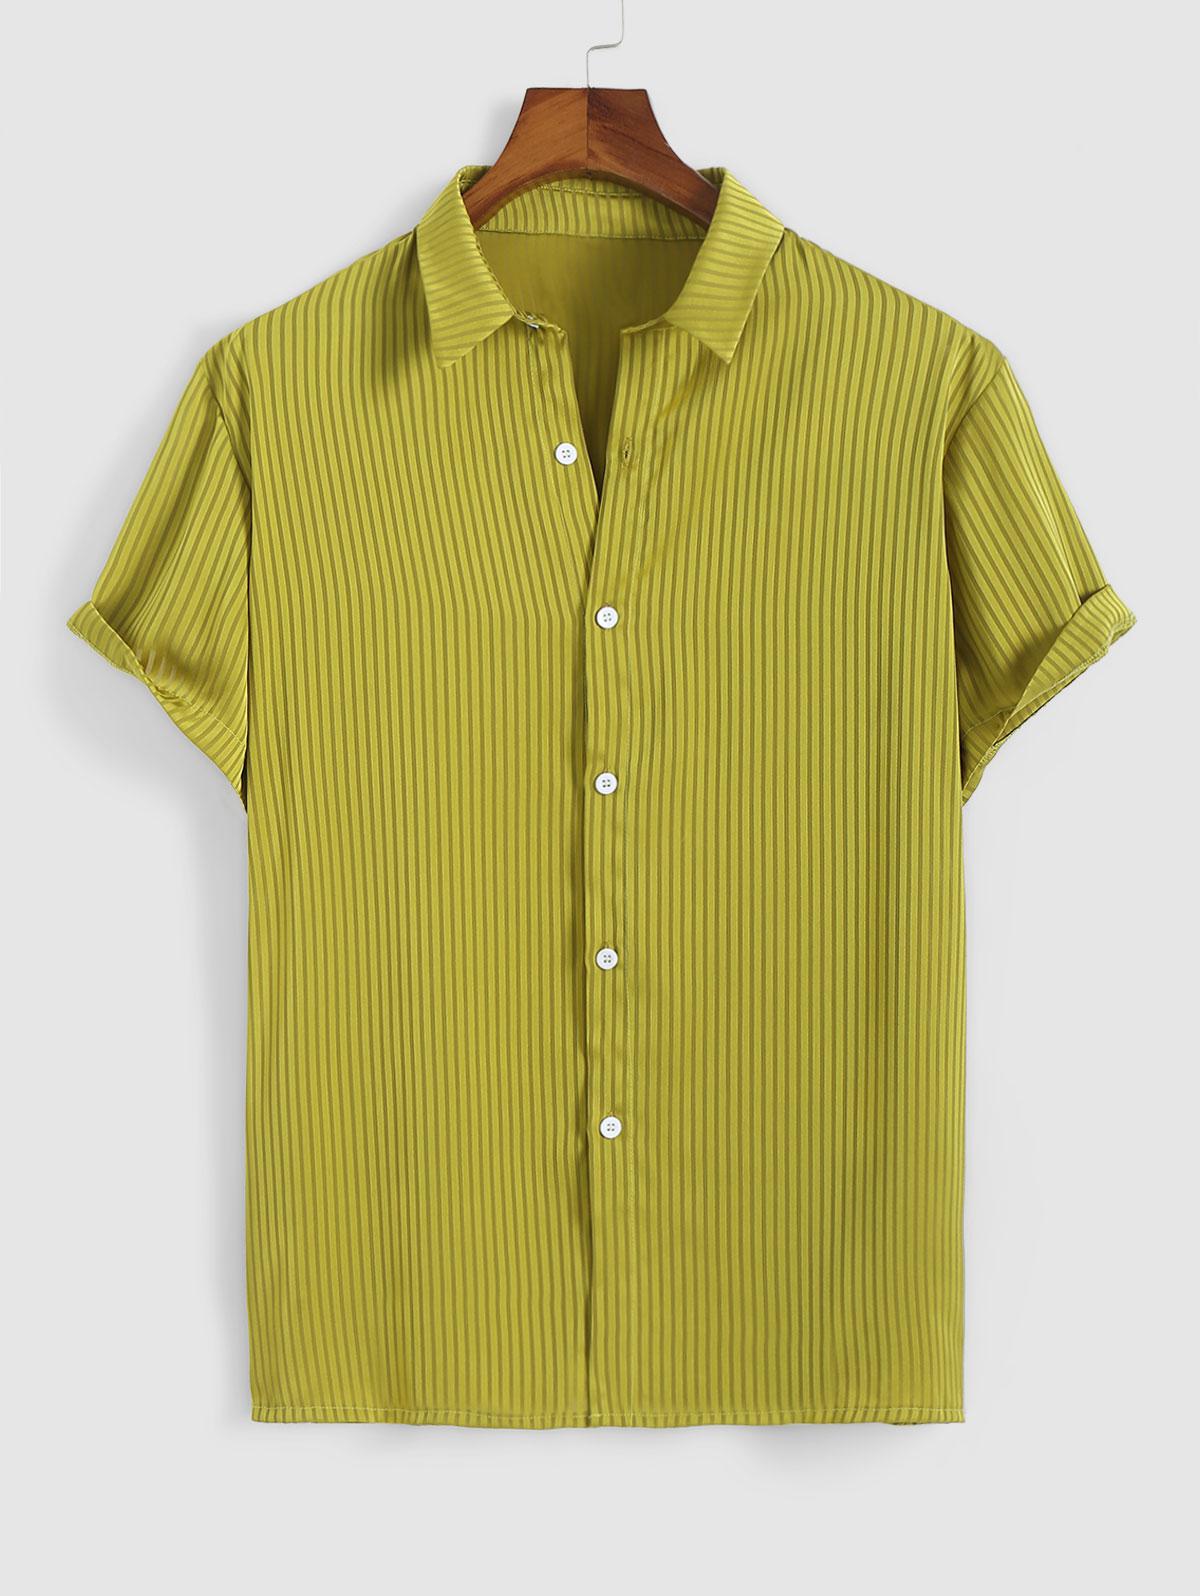 ZAFUL Men's ZAFUL Silky Striped Button Short Sleeve Shirt L Deep yellow